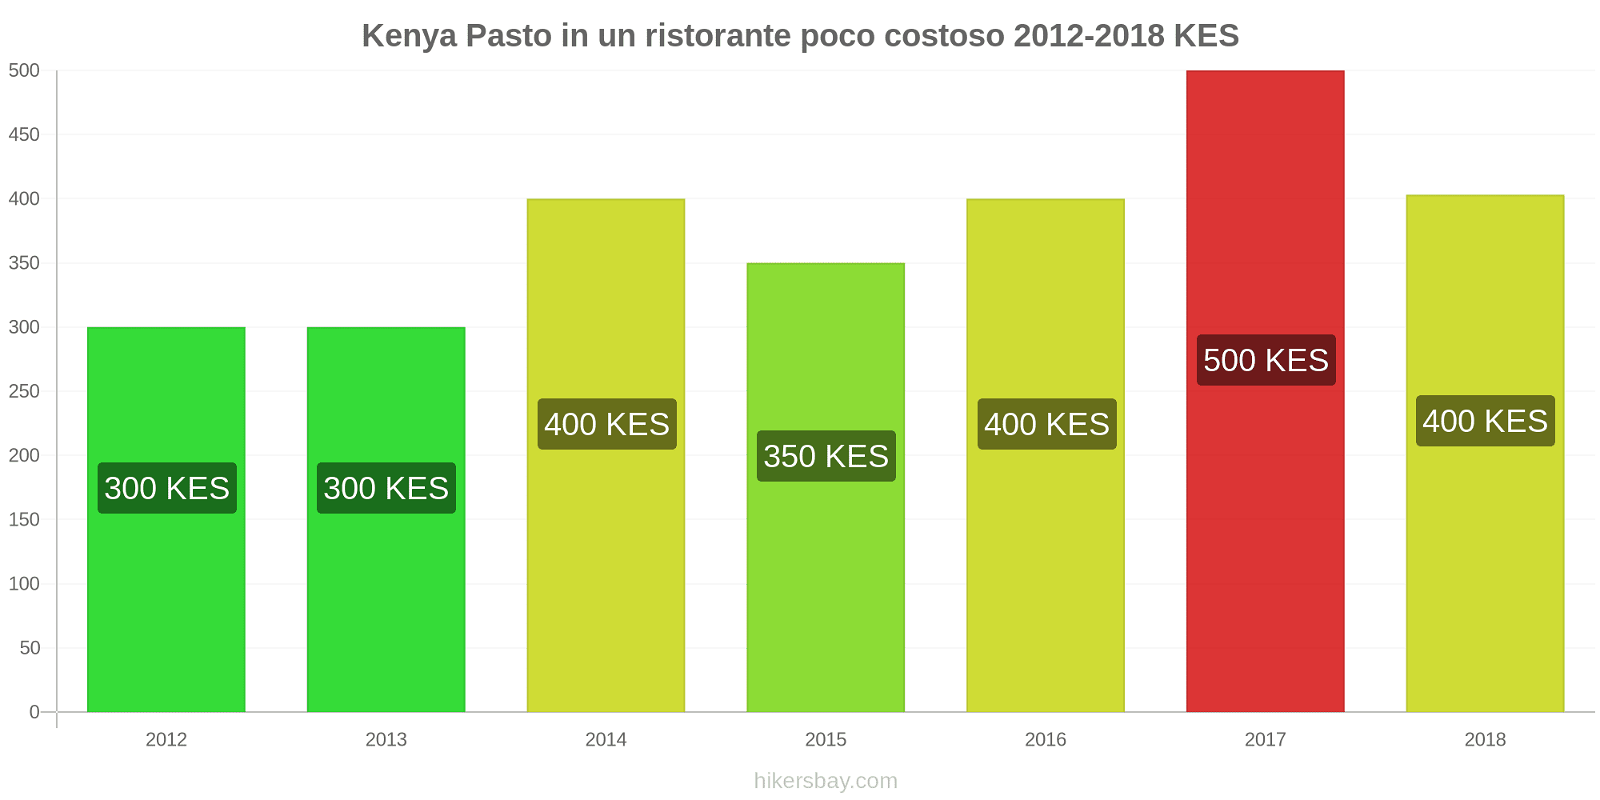 Kenya cambi di prezzo Pasto in un ristorante economico hikersbay.com